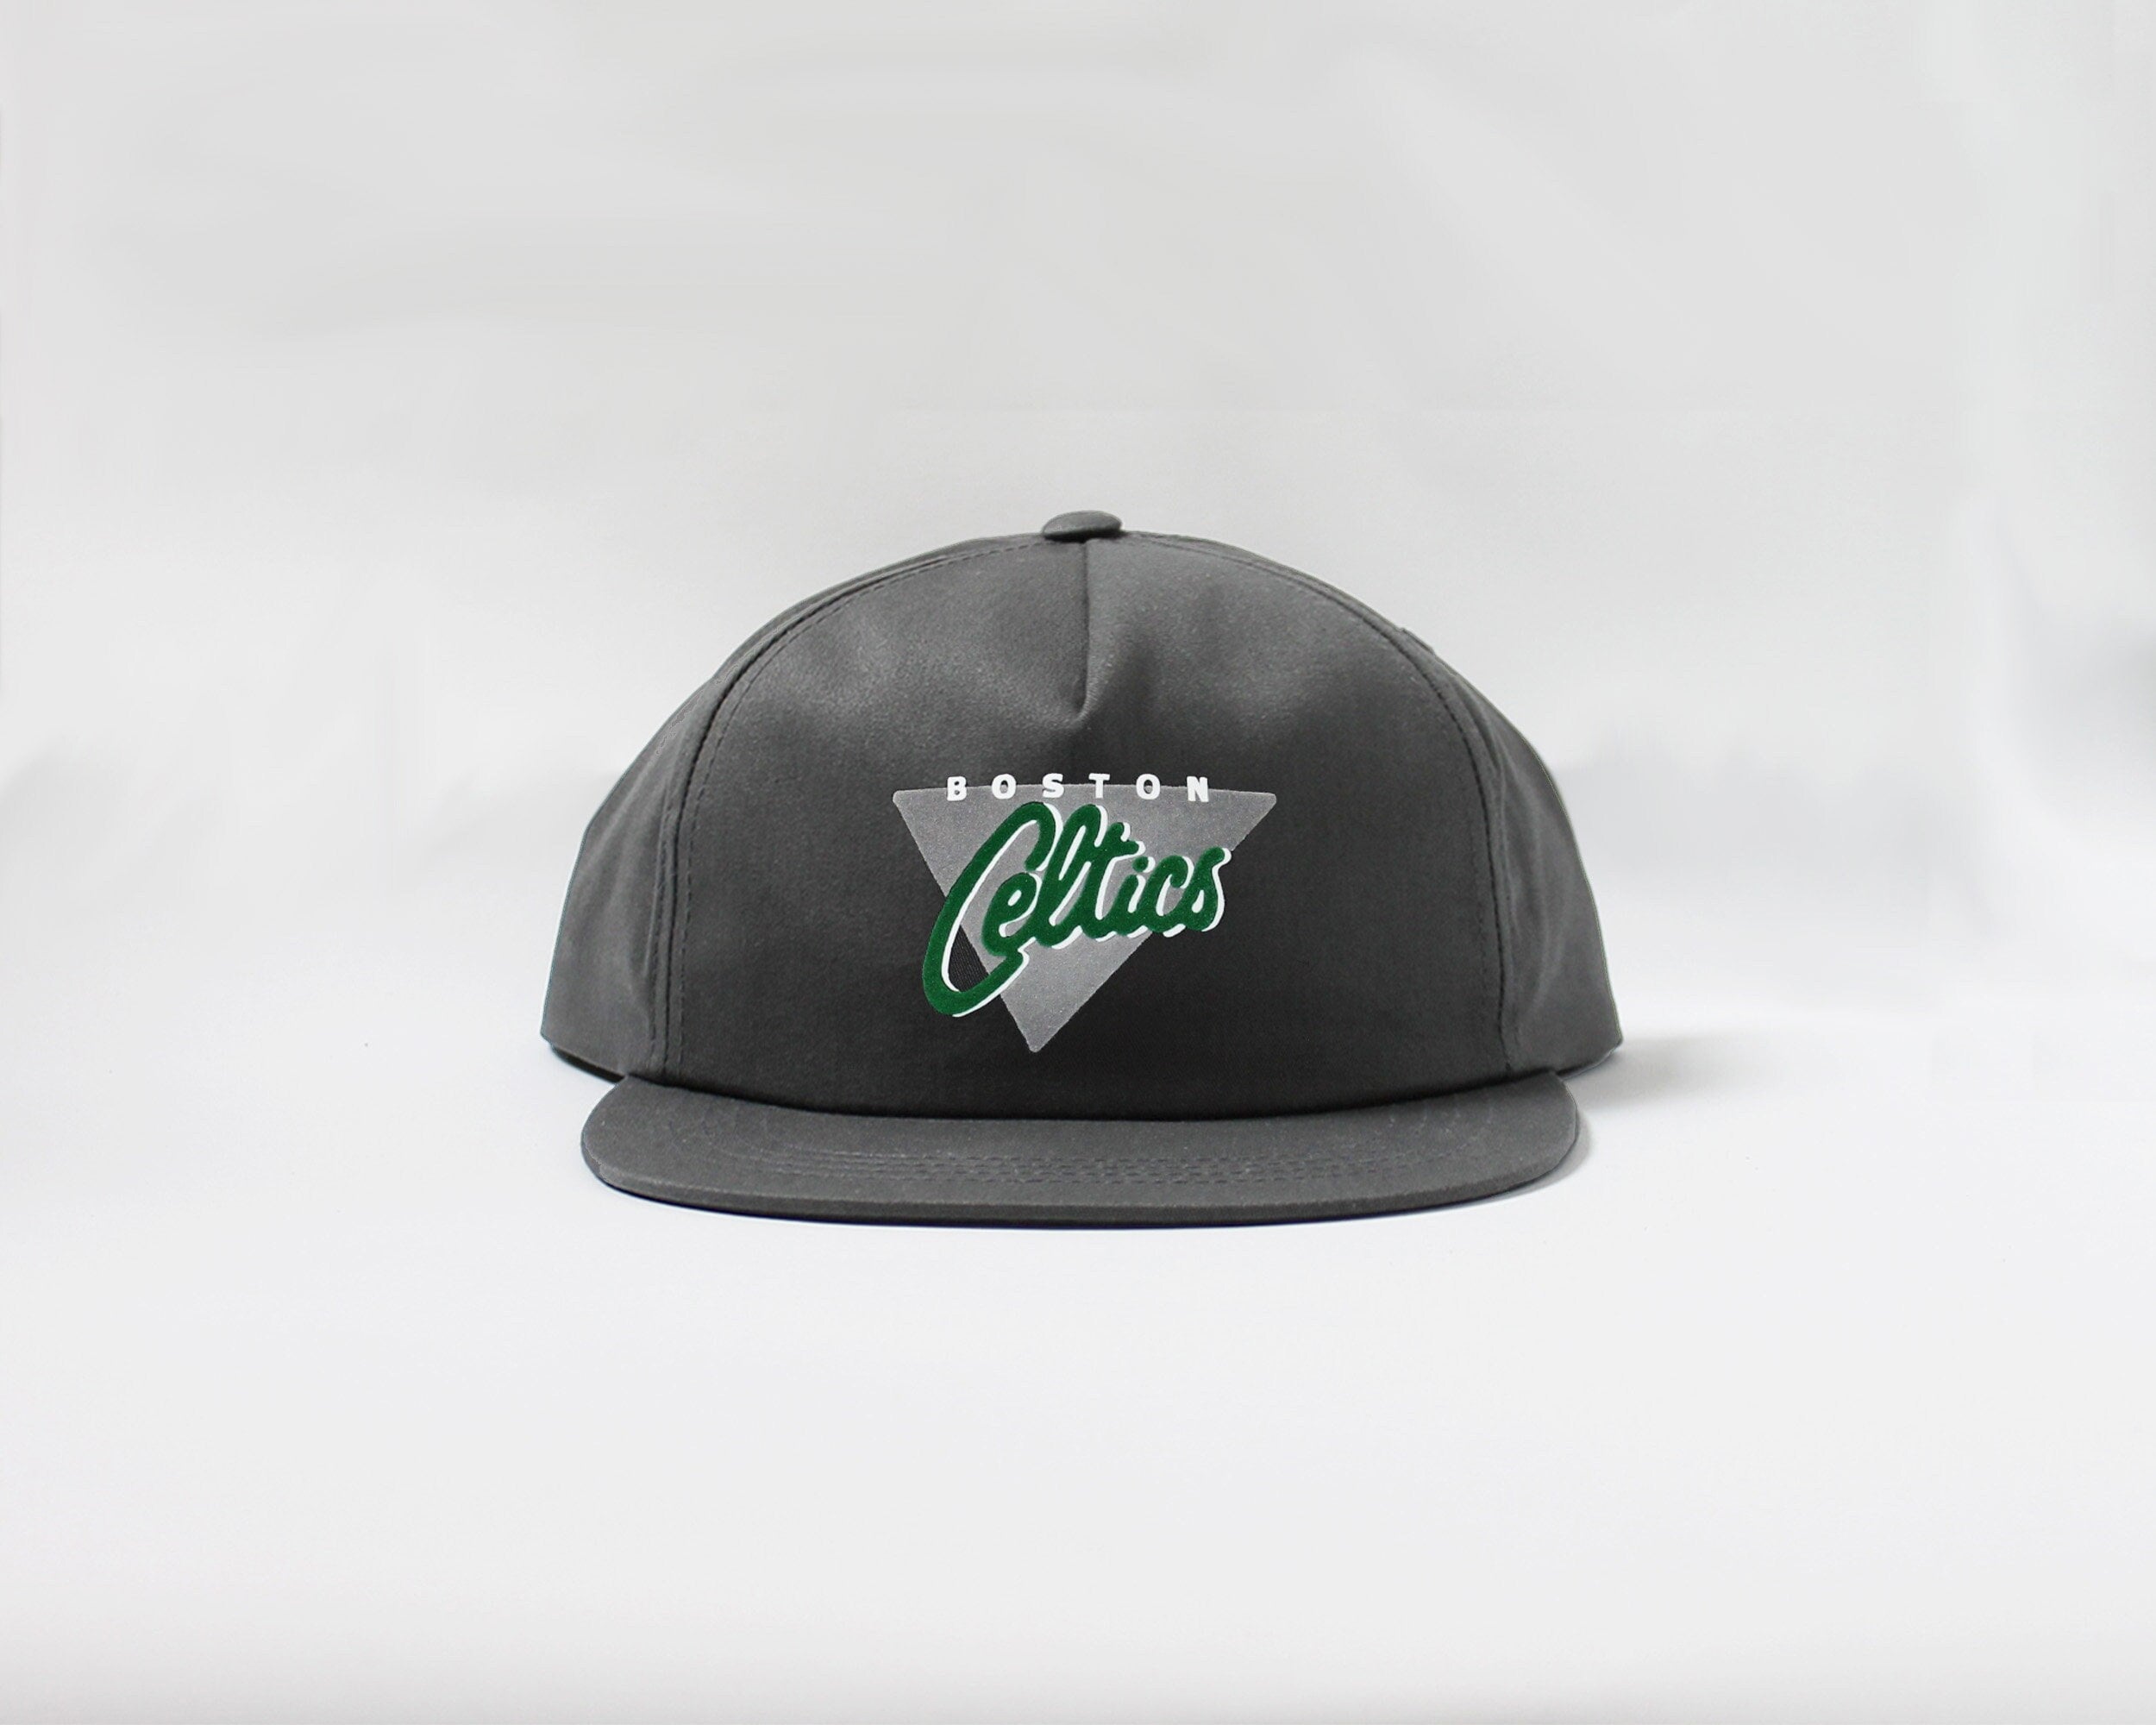  '47 Brand Boston Celtics, White, Baseball Cap : Sports